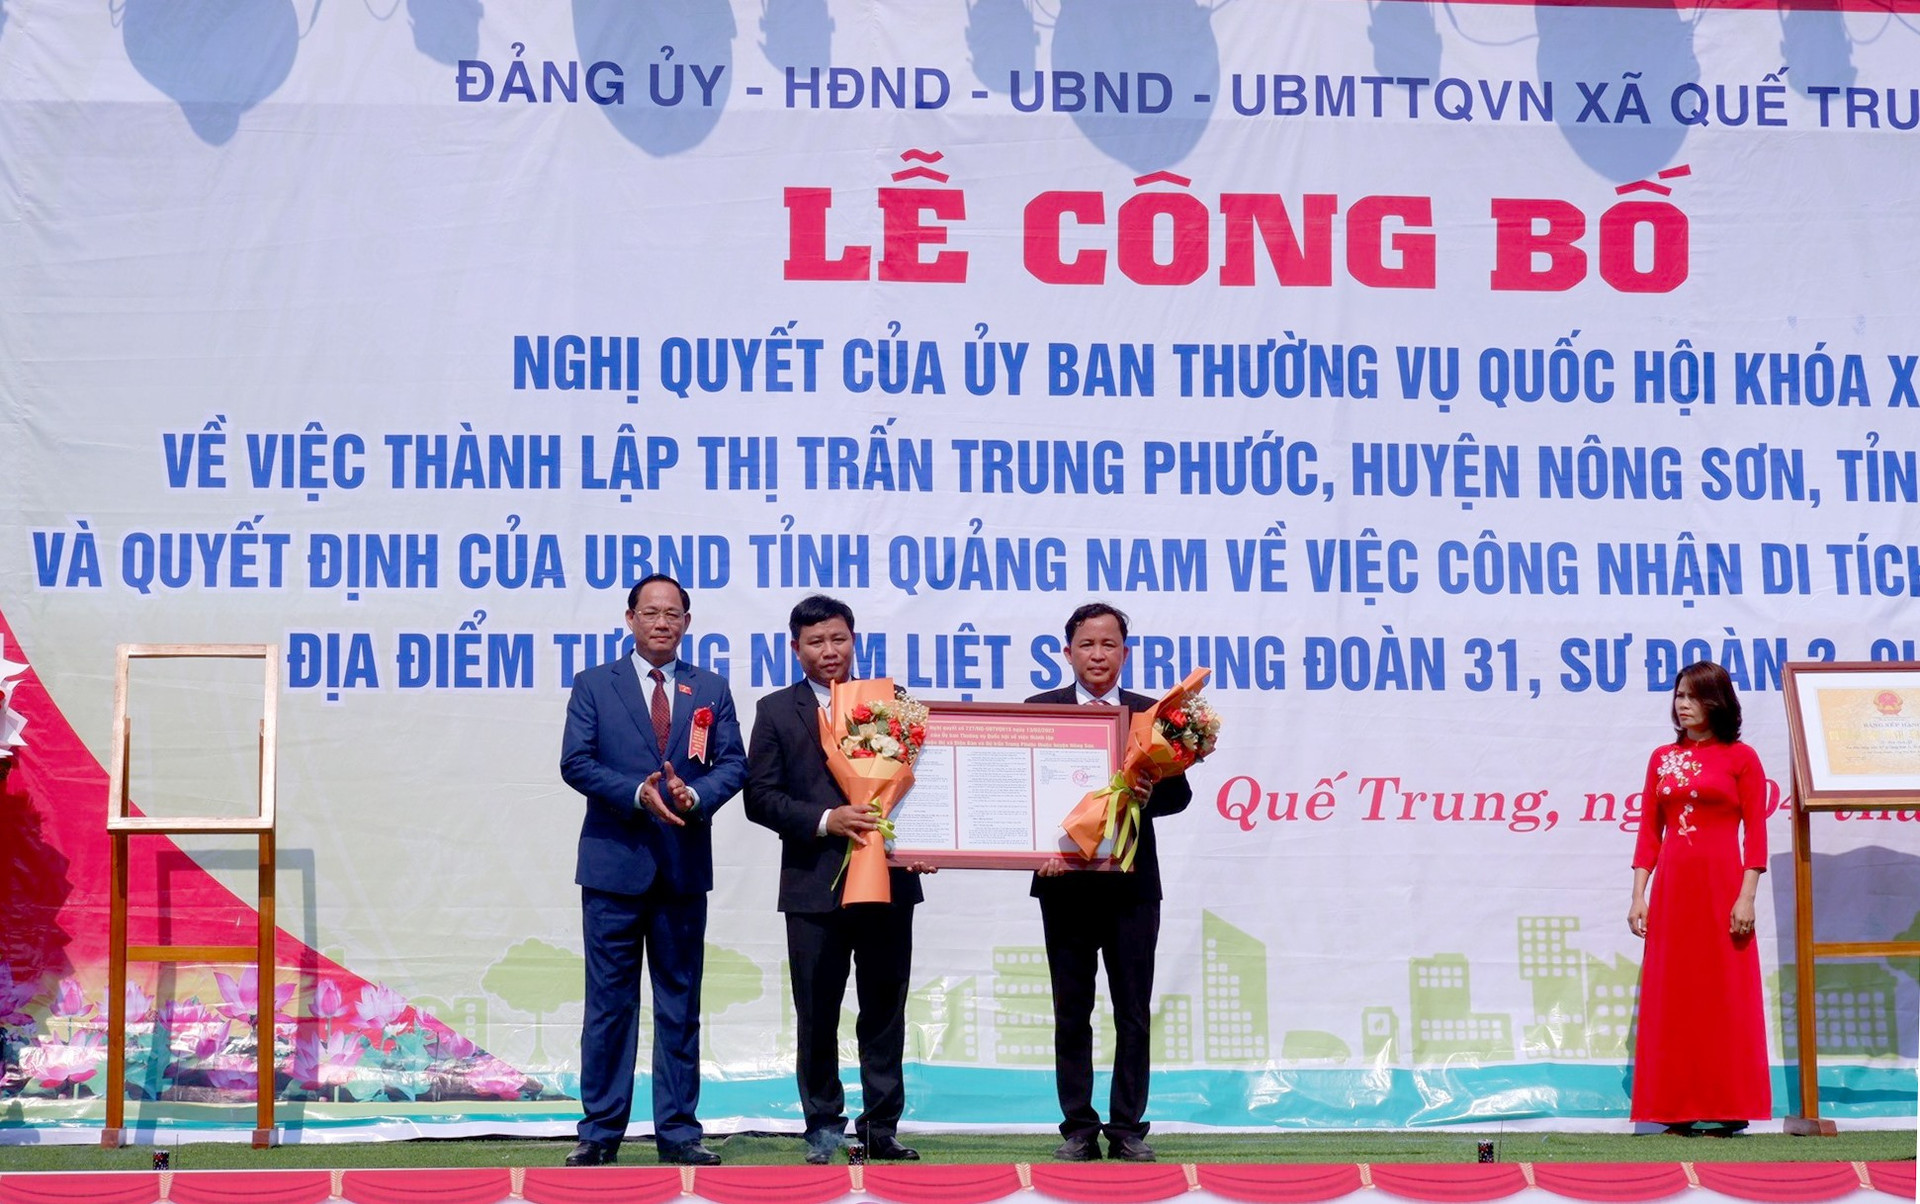 Thượng tướng Trần Quang Phương - Phó Chủ tịch Quốc hội trao Nghị quyết của Ủy ban Thường vụ Quốc hội về việc thành lập thị trấn Trung Phước. Ảnh: H.Q